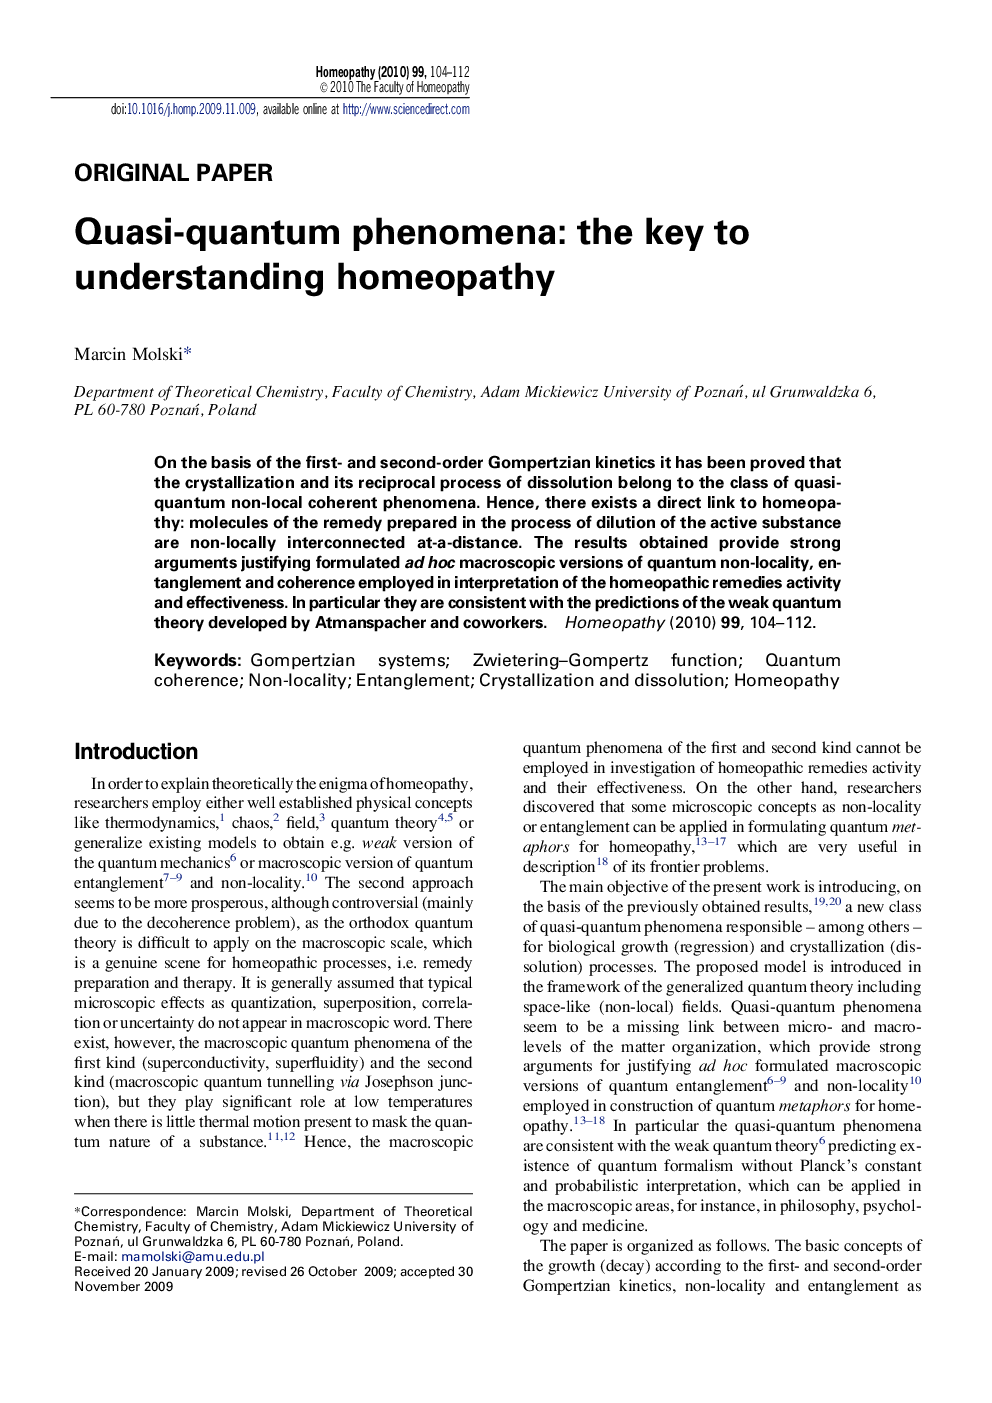 Quasi-quantum phenomena: the key to understanding homeopathy